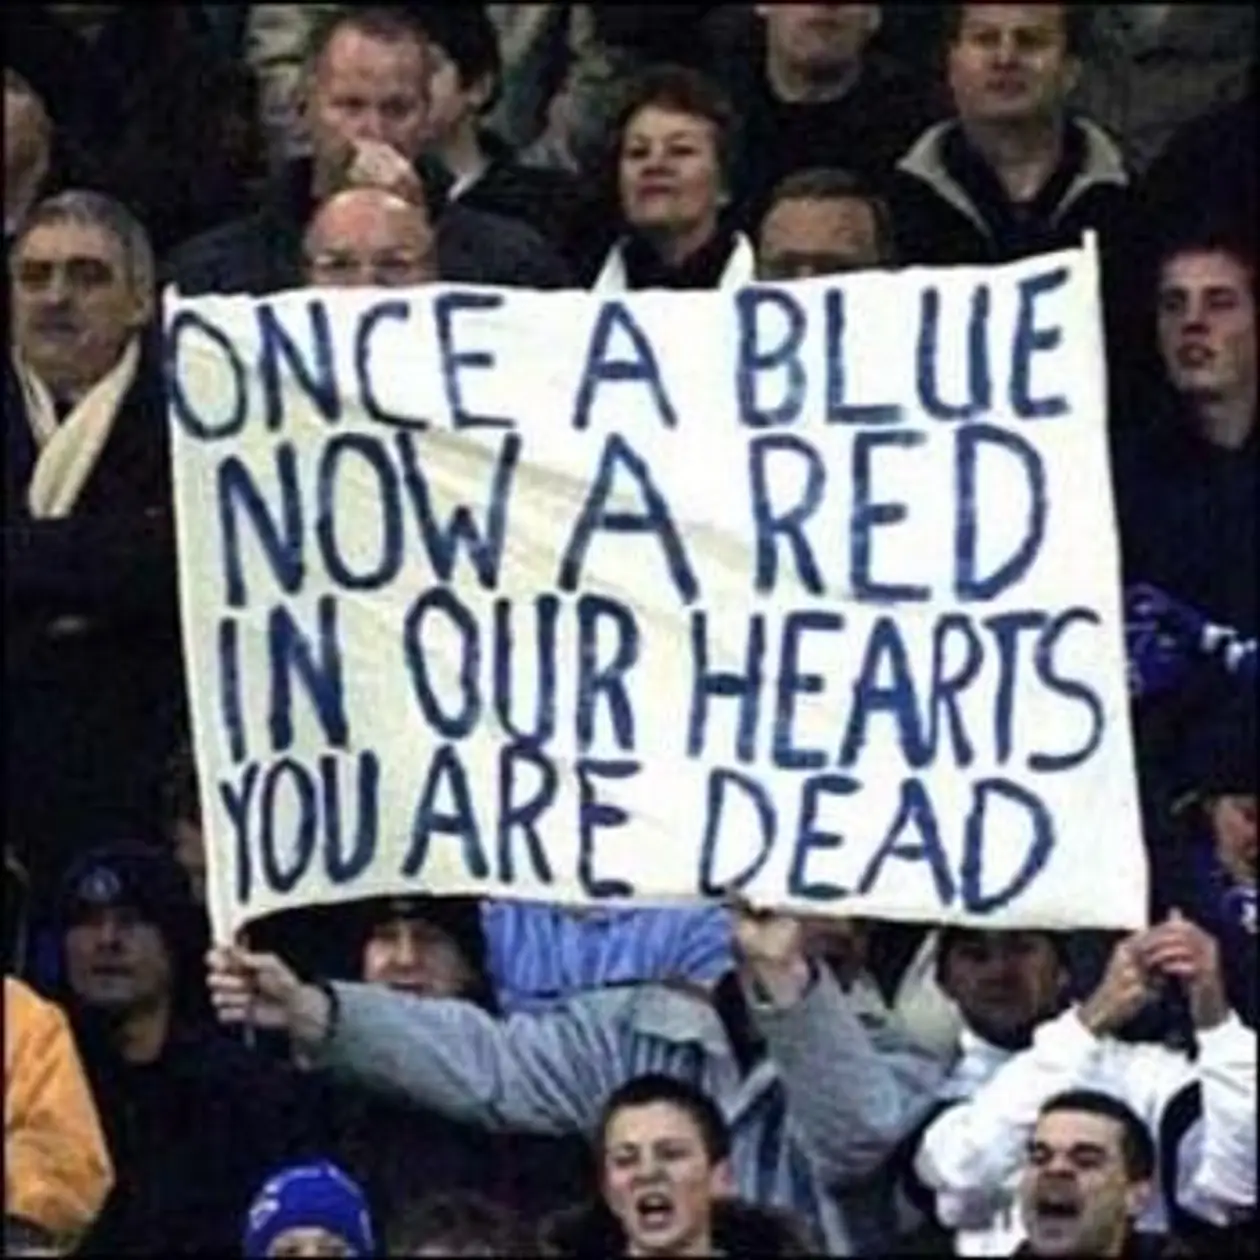 «Однажды синий, теперь - красный, в наших сердцах ты умер»